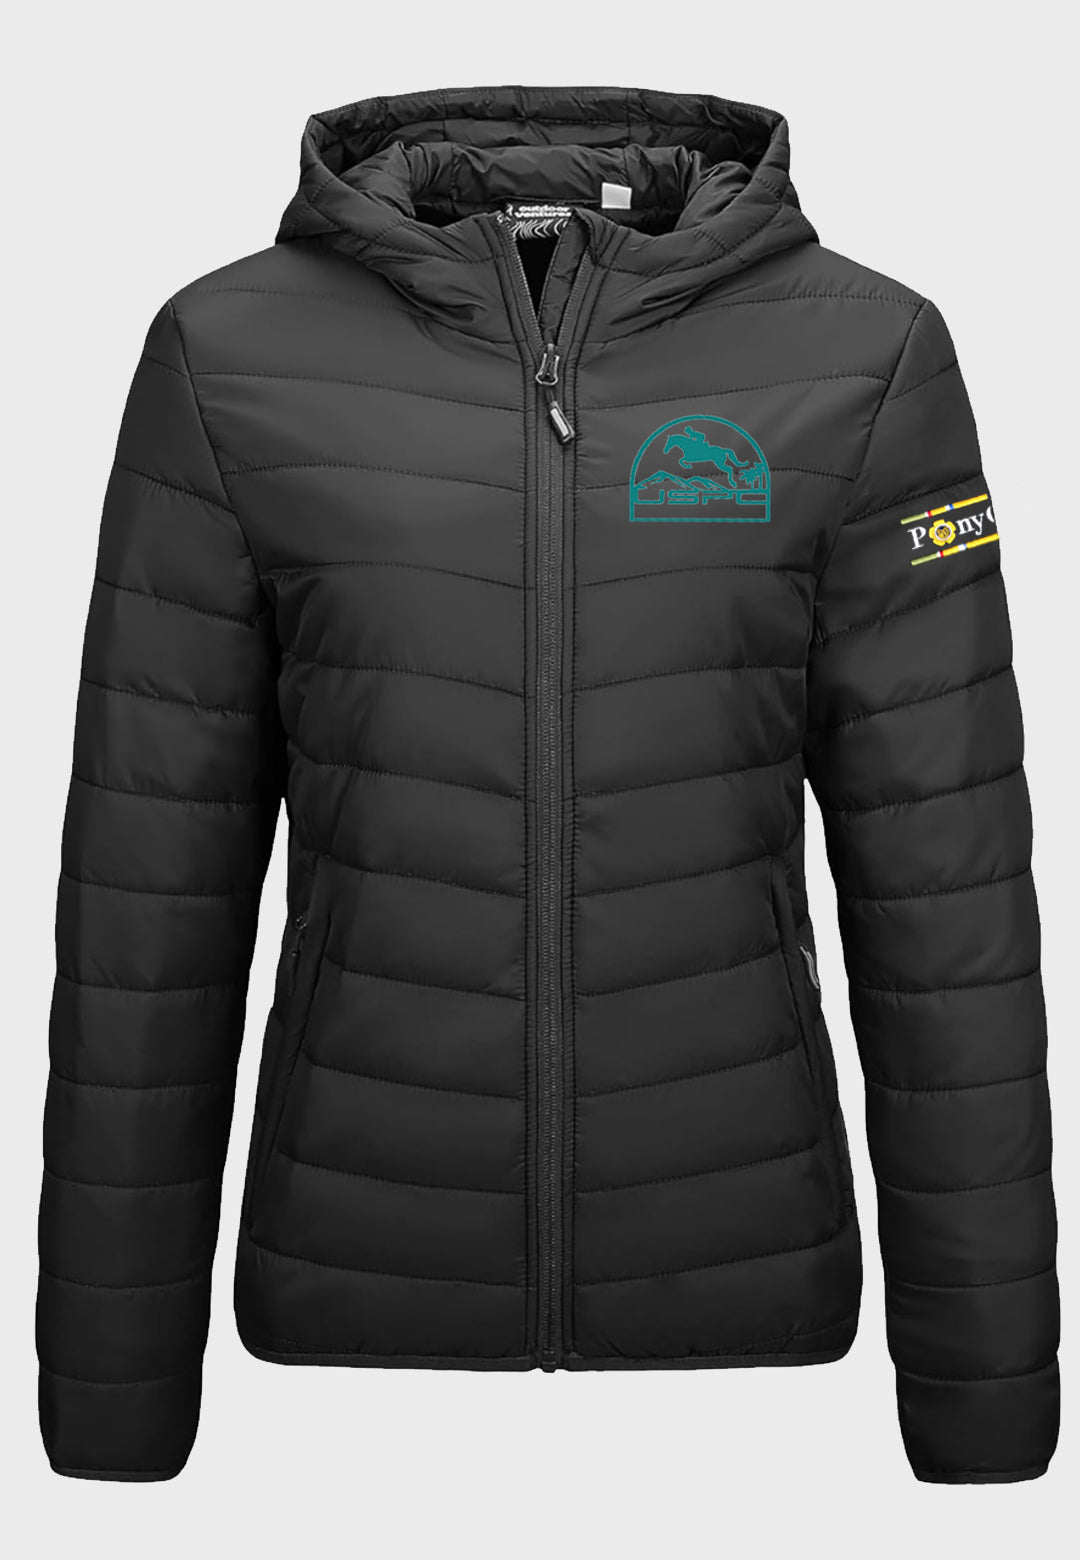 Southern CA USPC Outdoor Ventures Ladies Packable Lightweight Full-Zip Hooded Jacket